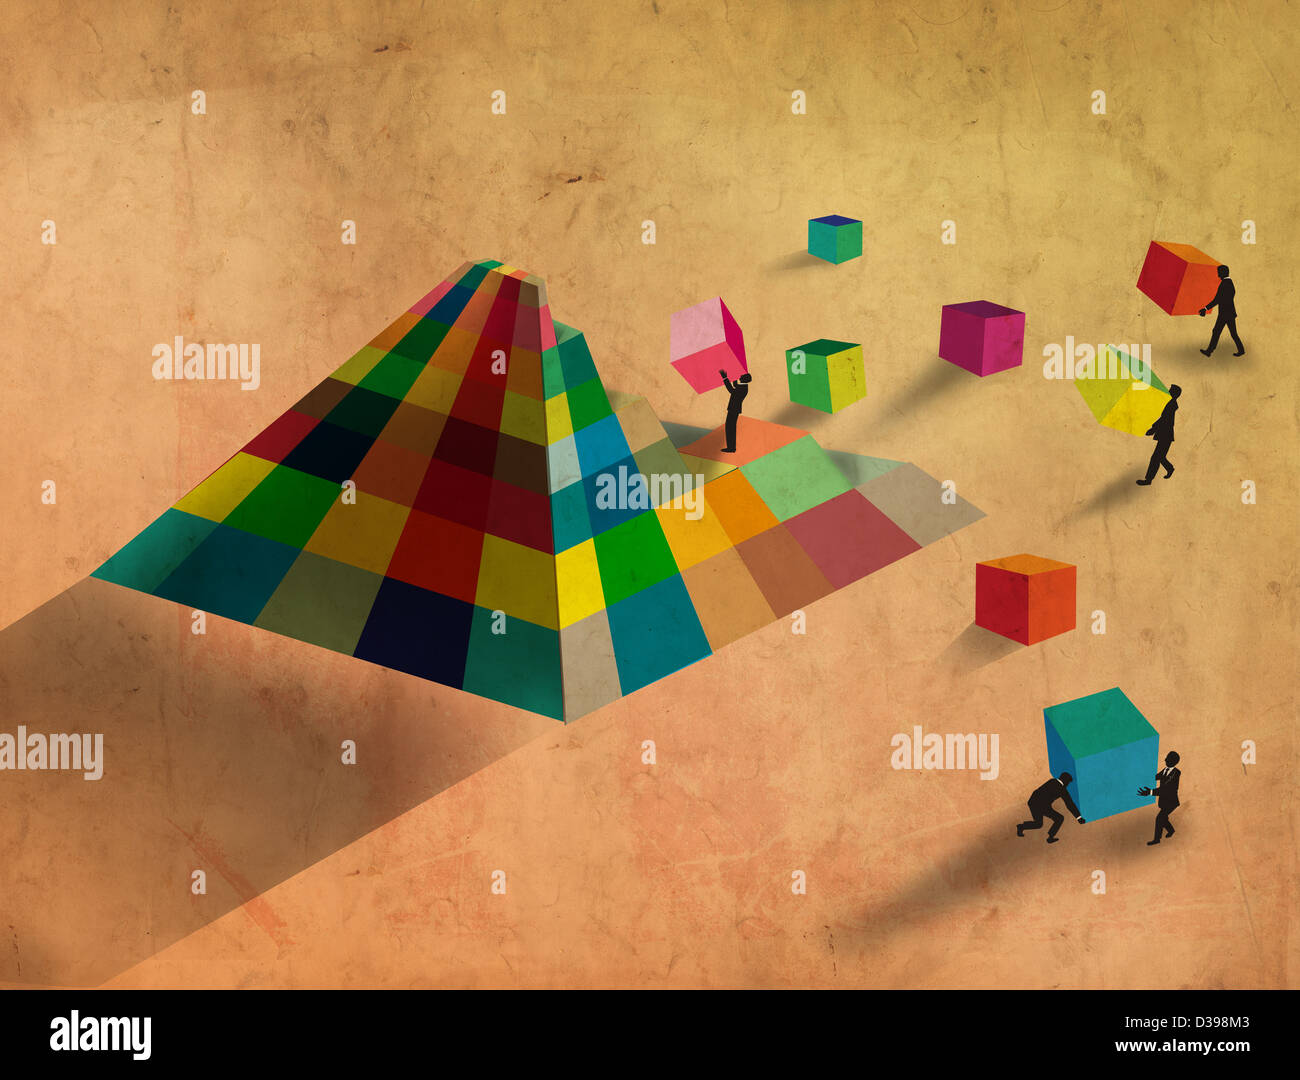 Bau der Pyramide mit bunten Blöcke repräsentieren Teamarbeit Geschäftsleute Stockfoto